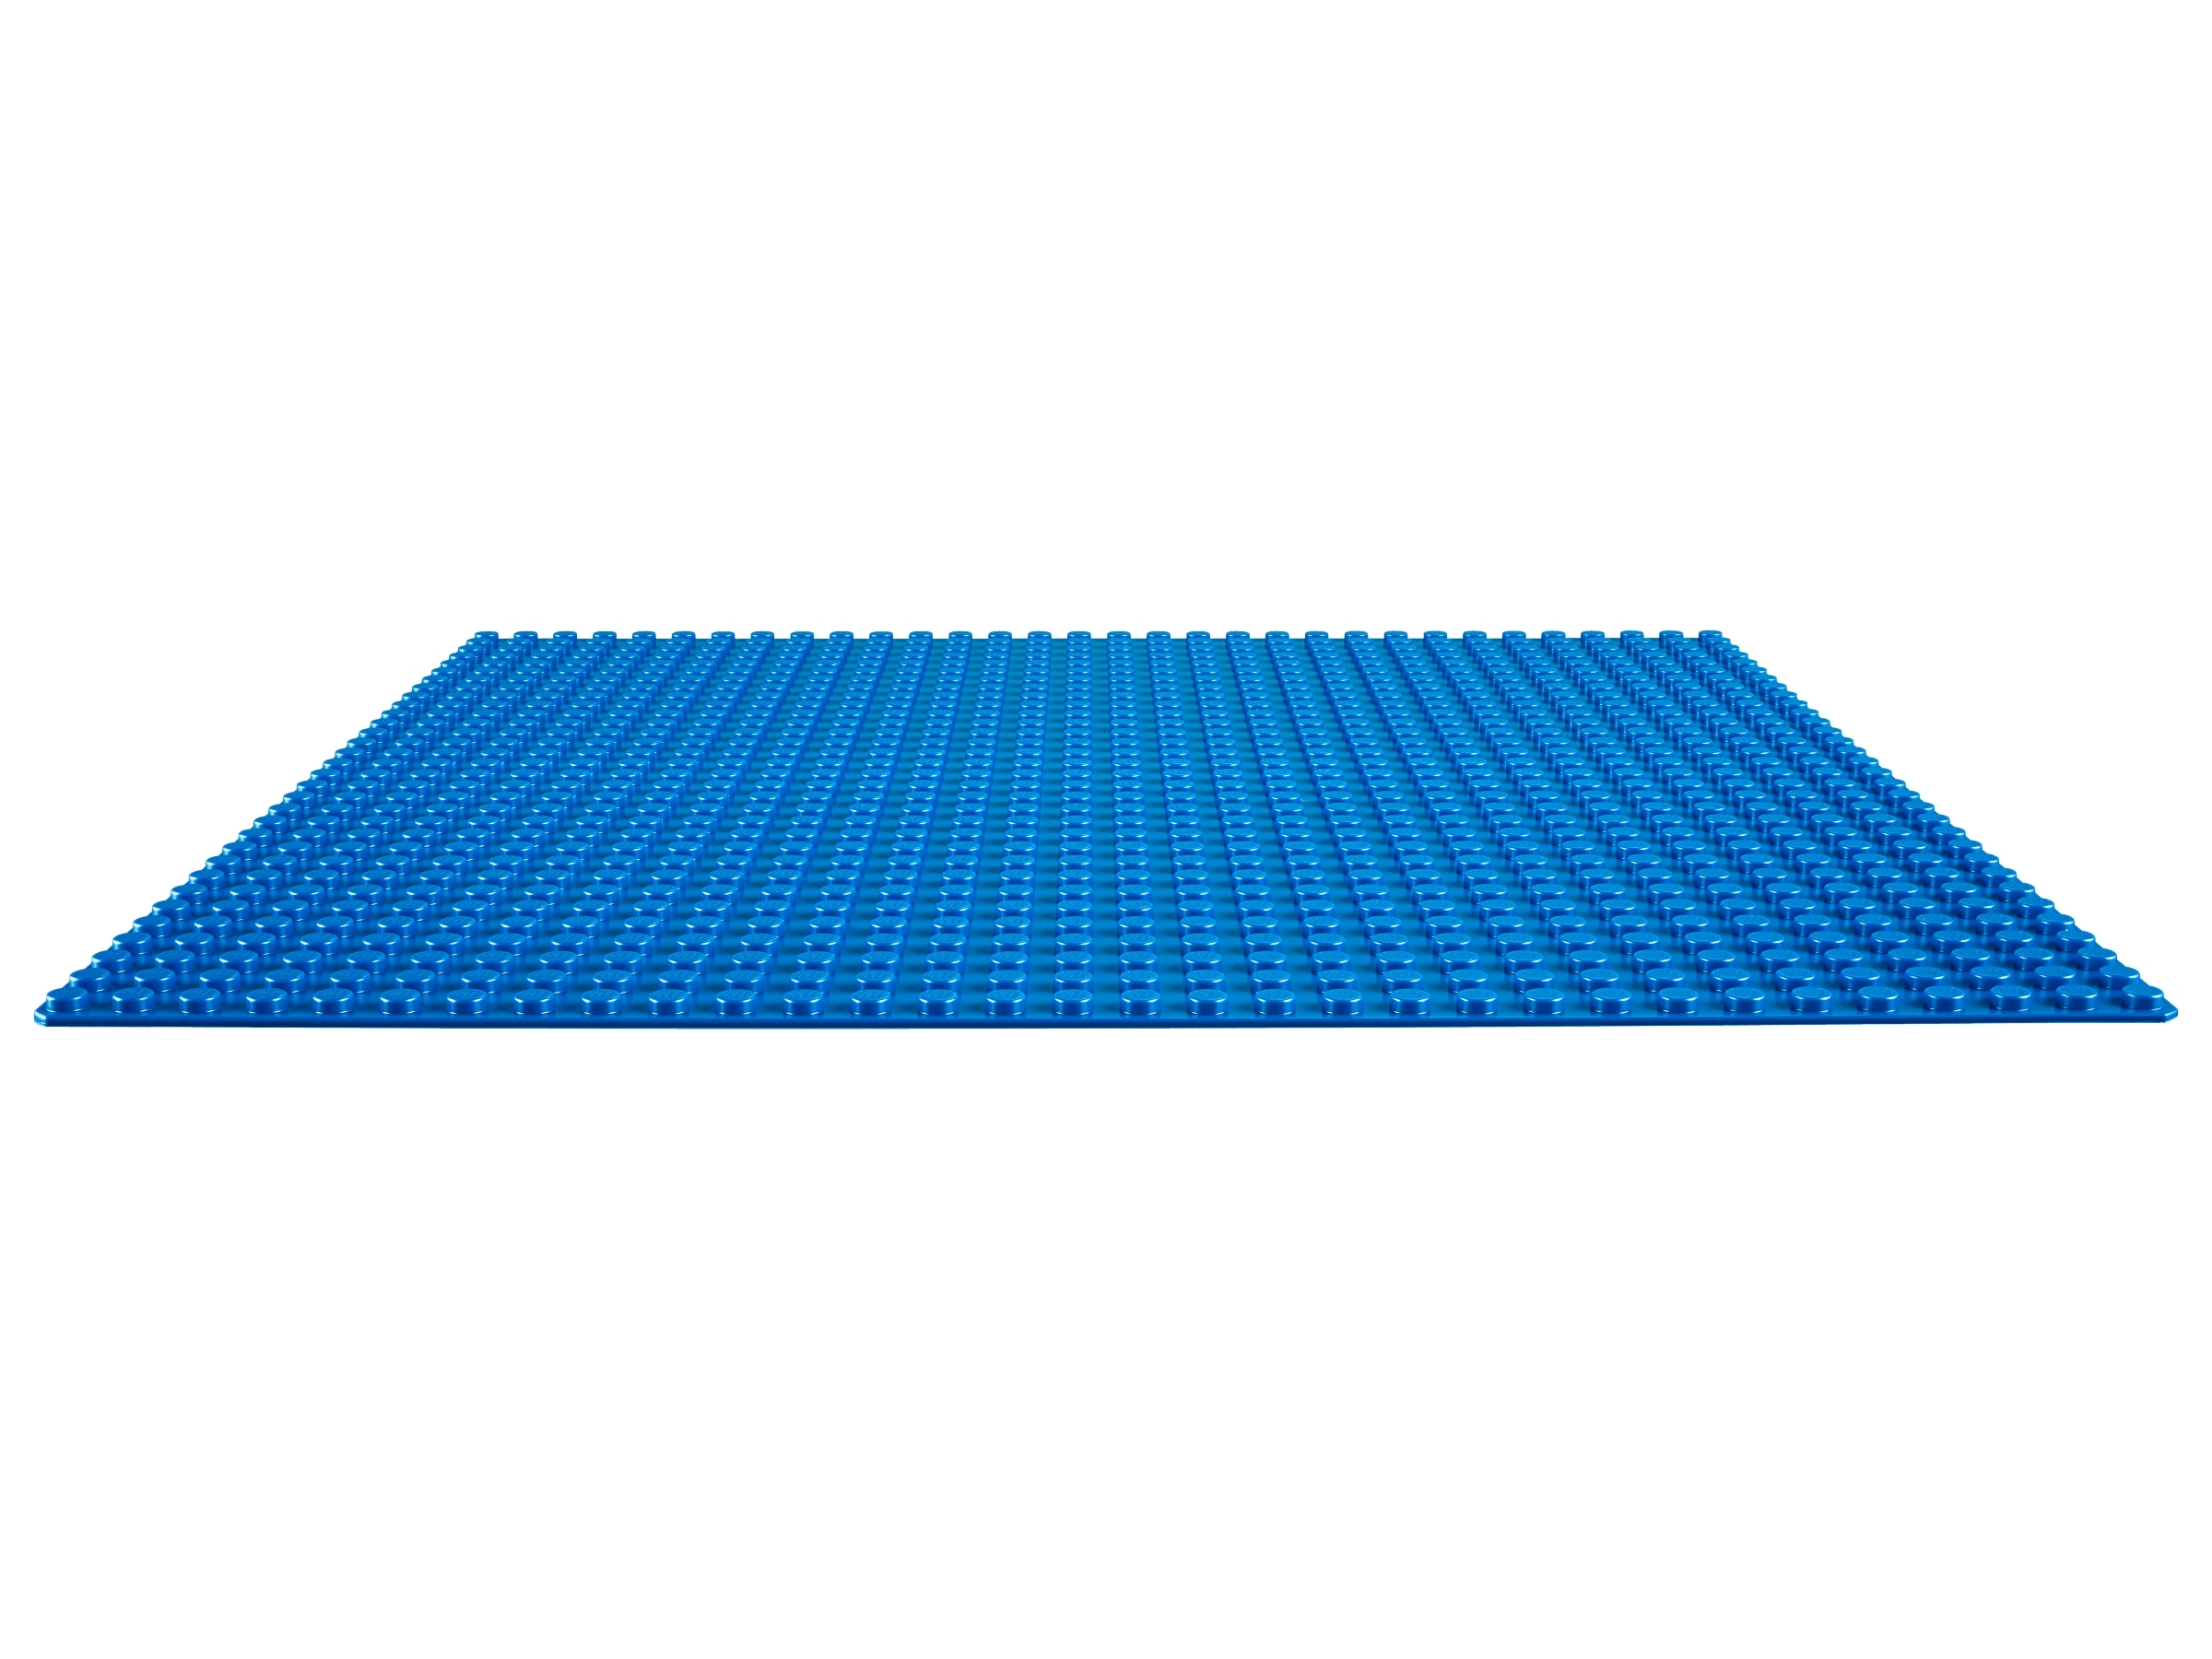 Lego Classic. 10714 Niebieska płytka konstrukcyjna